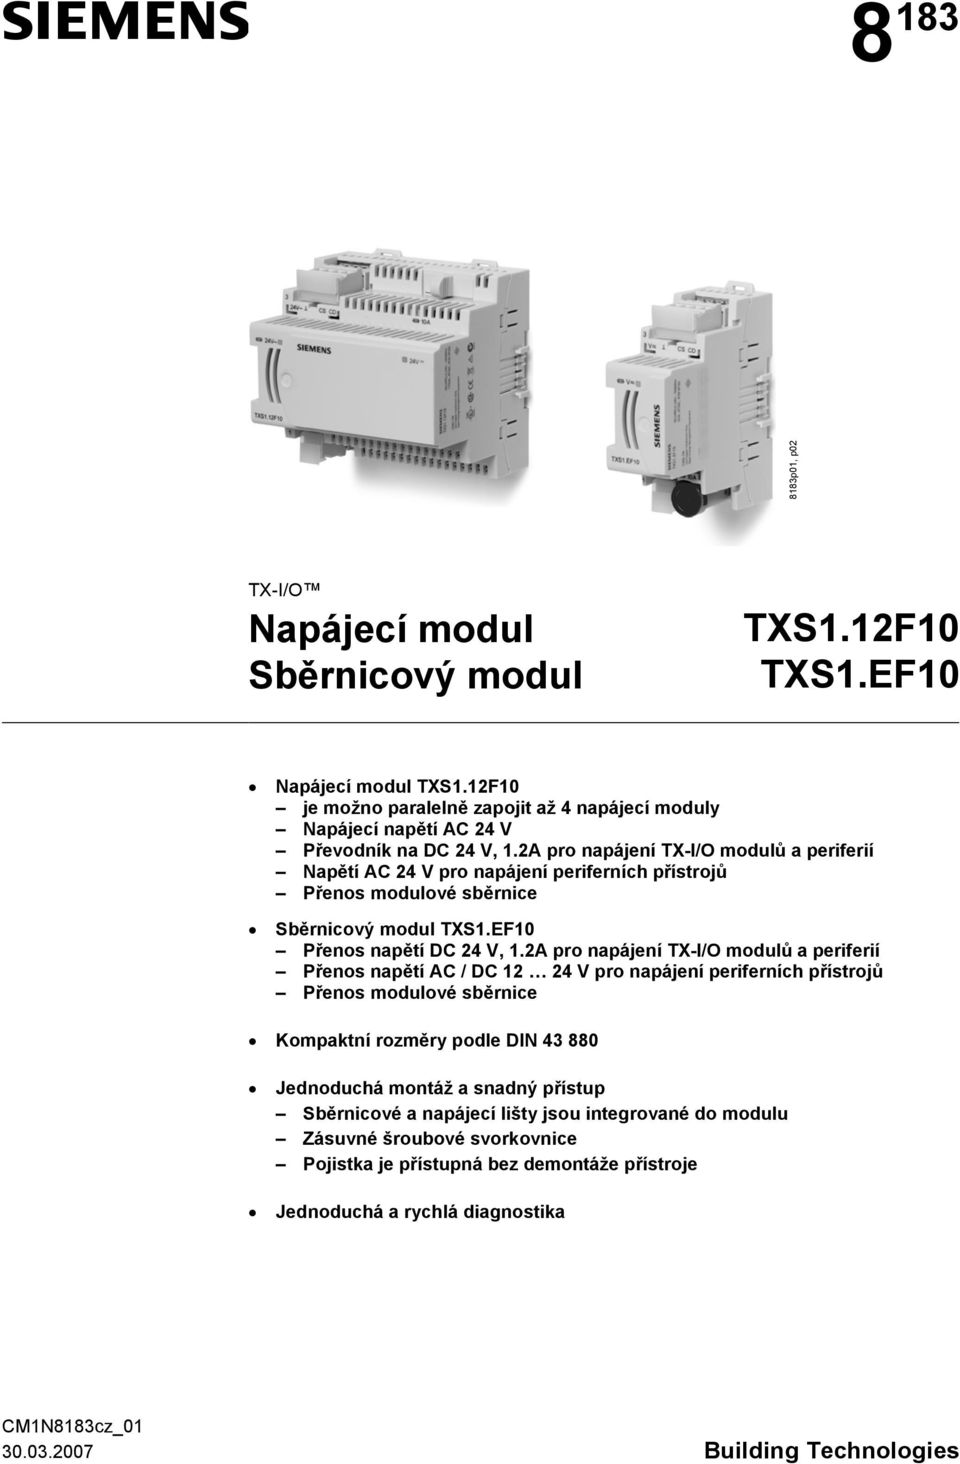 2A pro napájení TX-I/O modulů a periferií Napětí AC 24 V pro napájení periferních přístrojů Přenos modulové sběrnice Sběrnicový modul TXS1.EF10 Přenos napětí DC 24 V, 1.